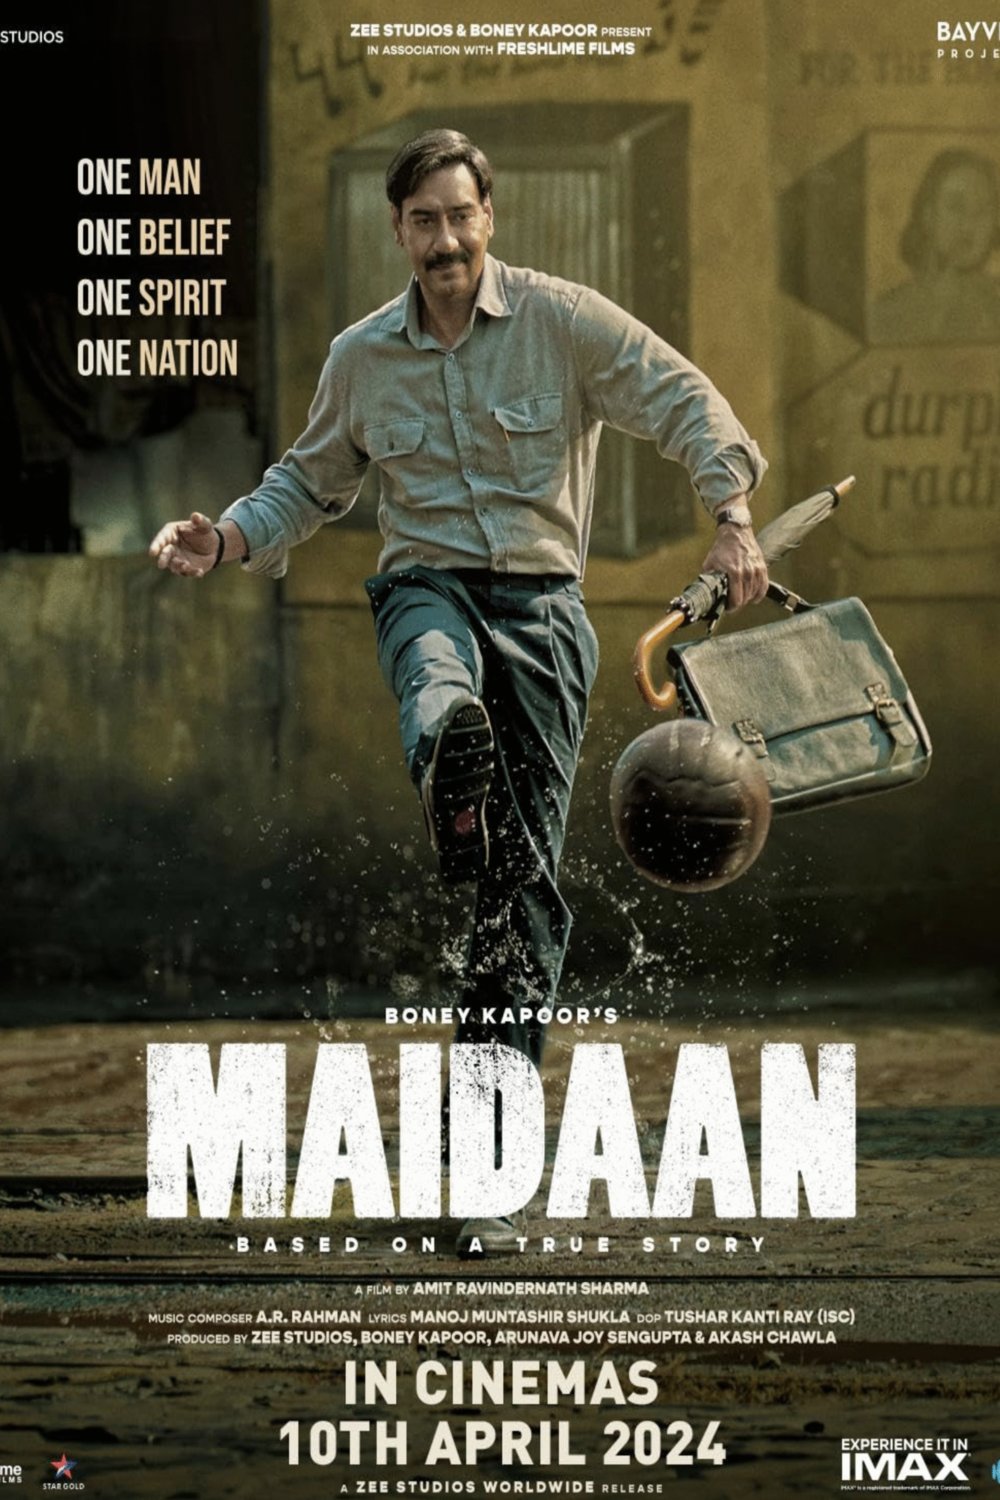 Hindi poster of the movie Maidaan